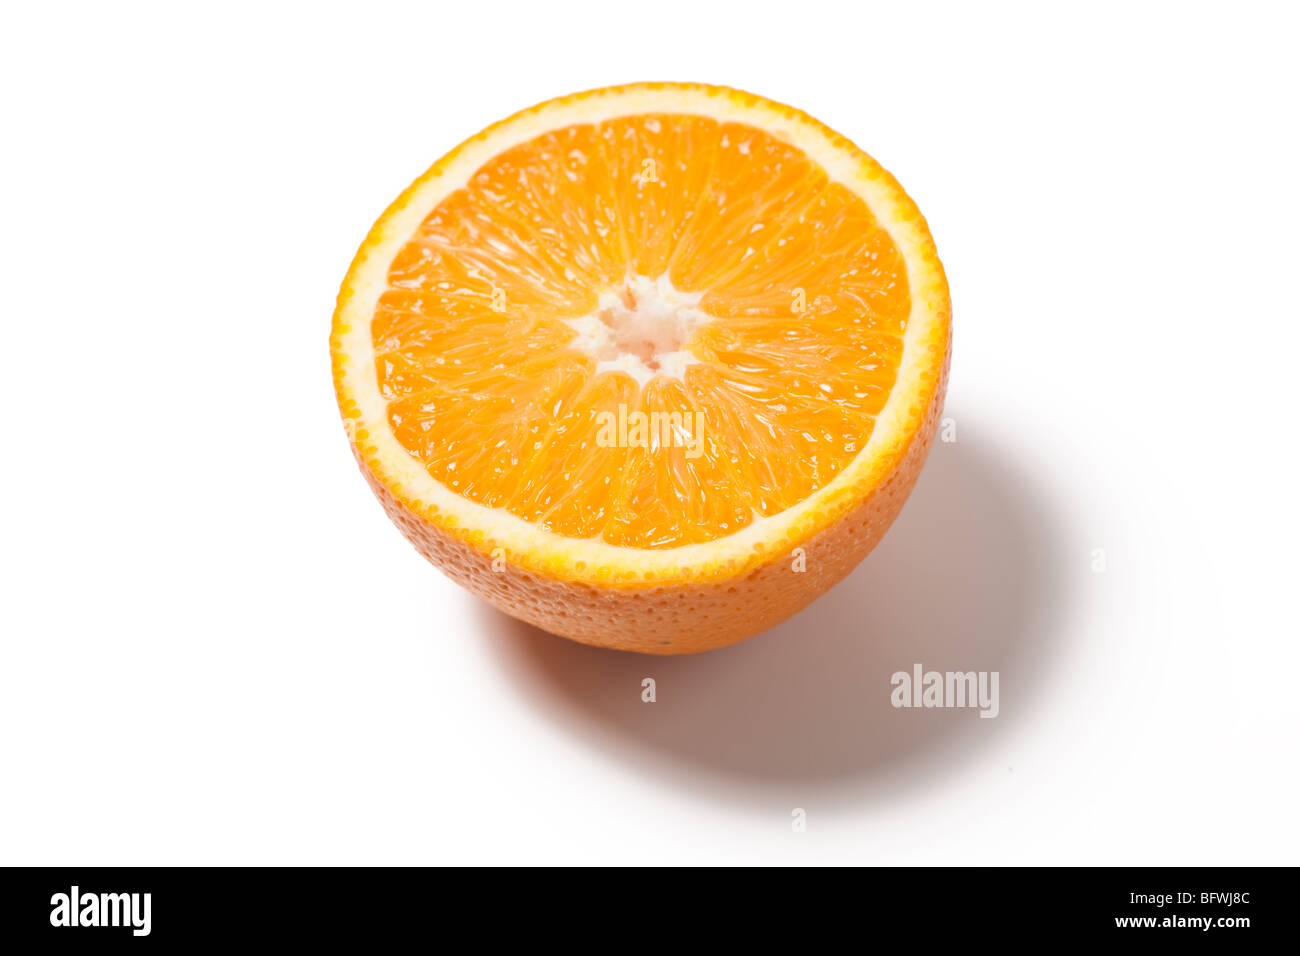 fresh orange on white background Stock Photo